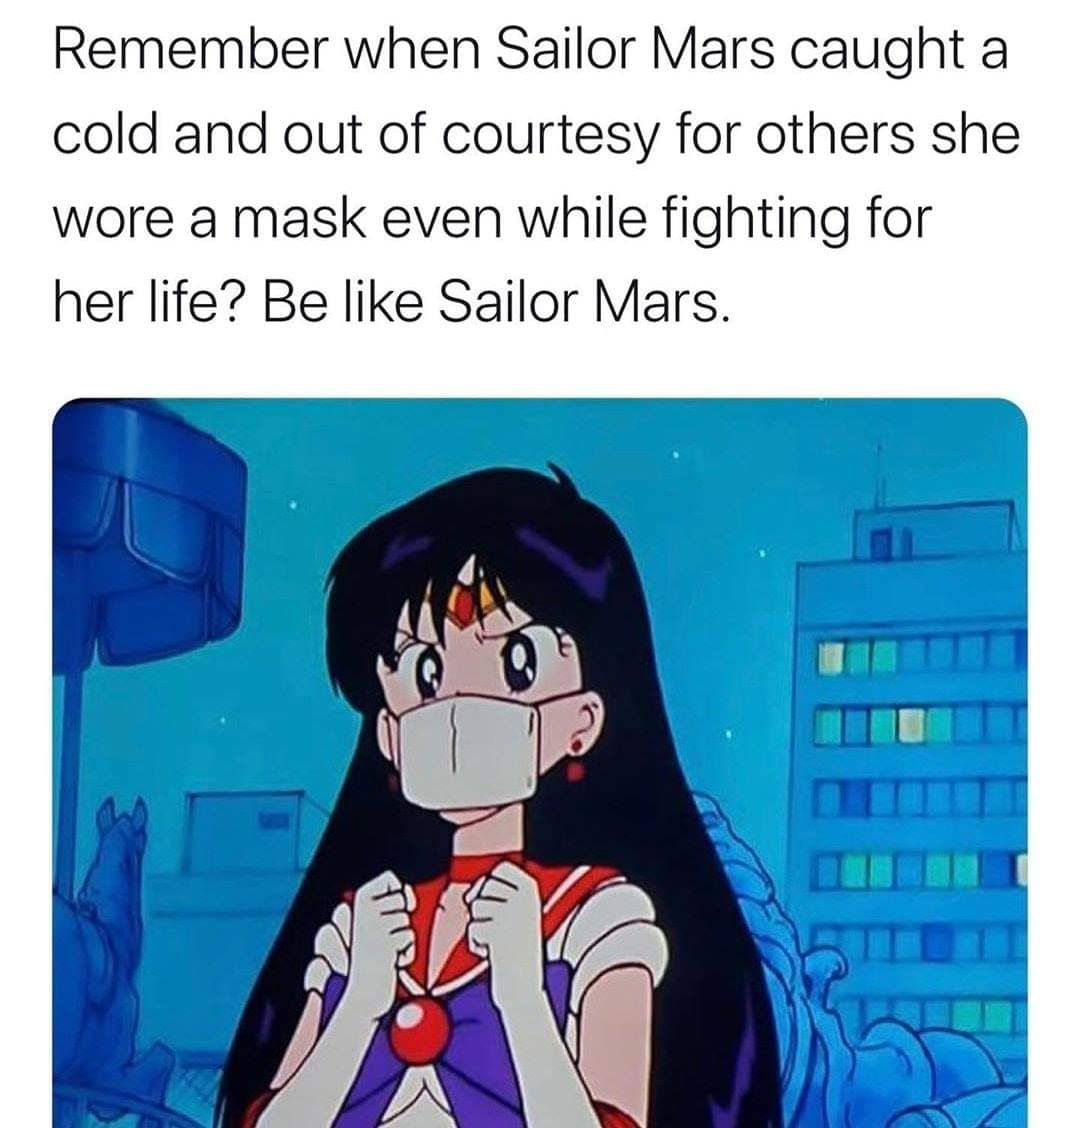 be like Sailor Mars!